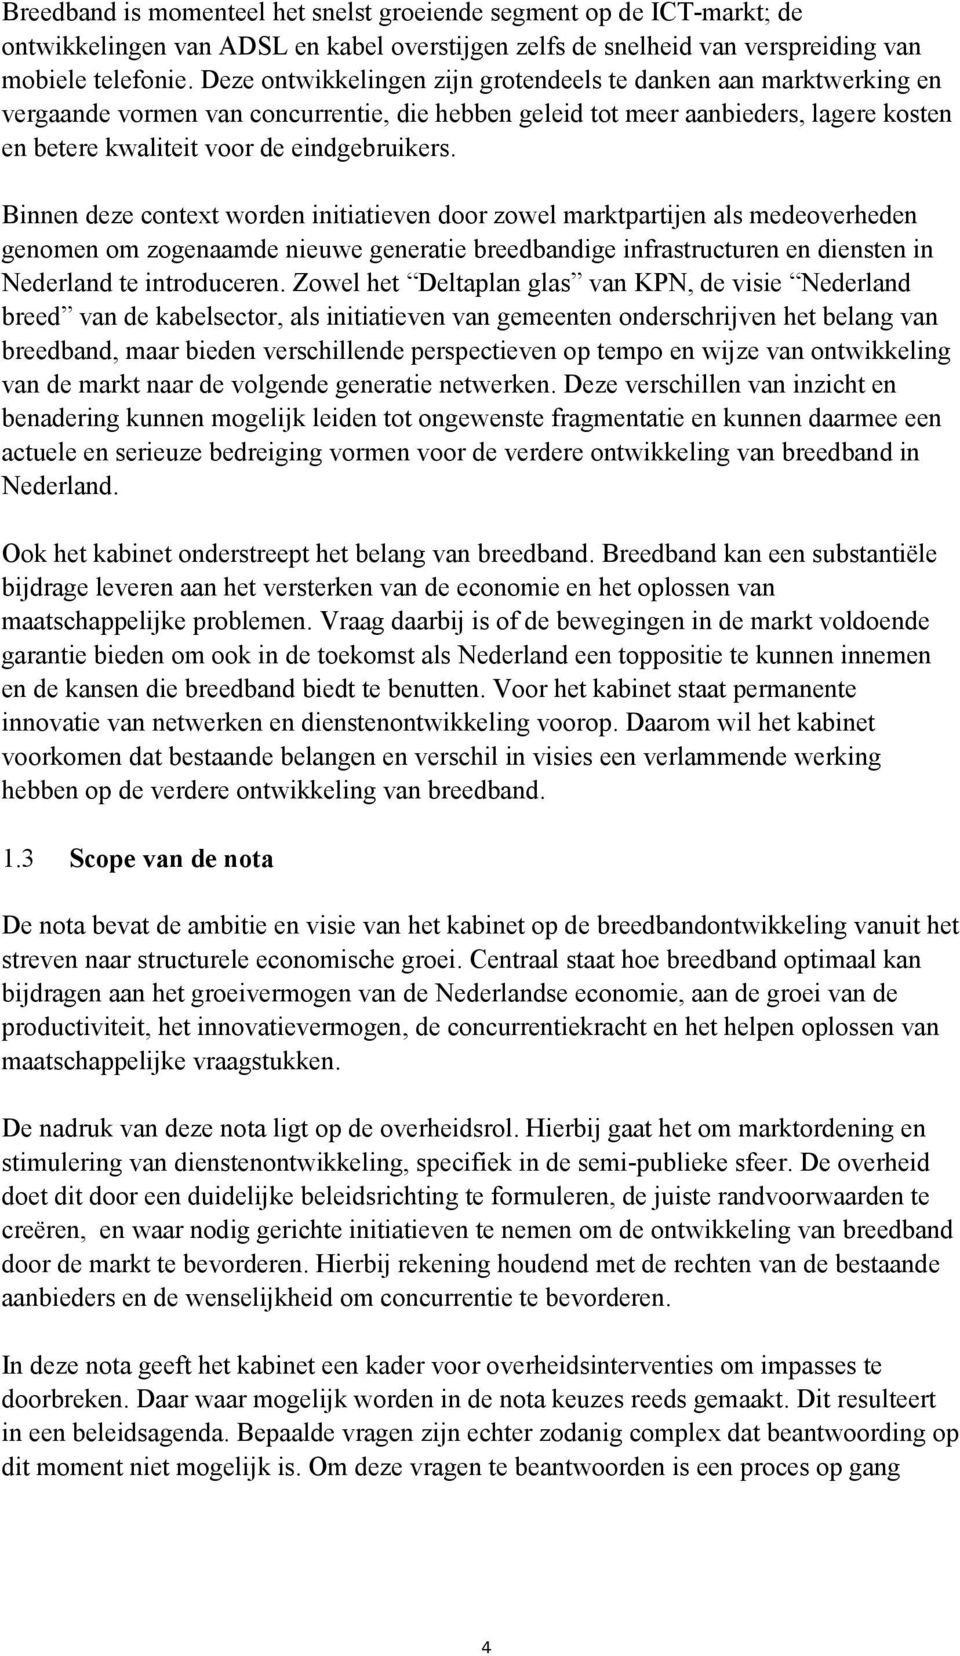 Binnen deze context worden initiatieven door zowel marktpartijen als medeoverheden genomen om zogenaamde nieuwe generatie breedbandige infrastructuren en diensten in Nederland te introduceren.